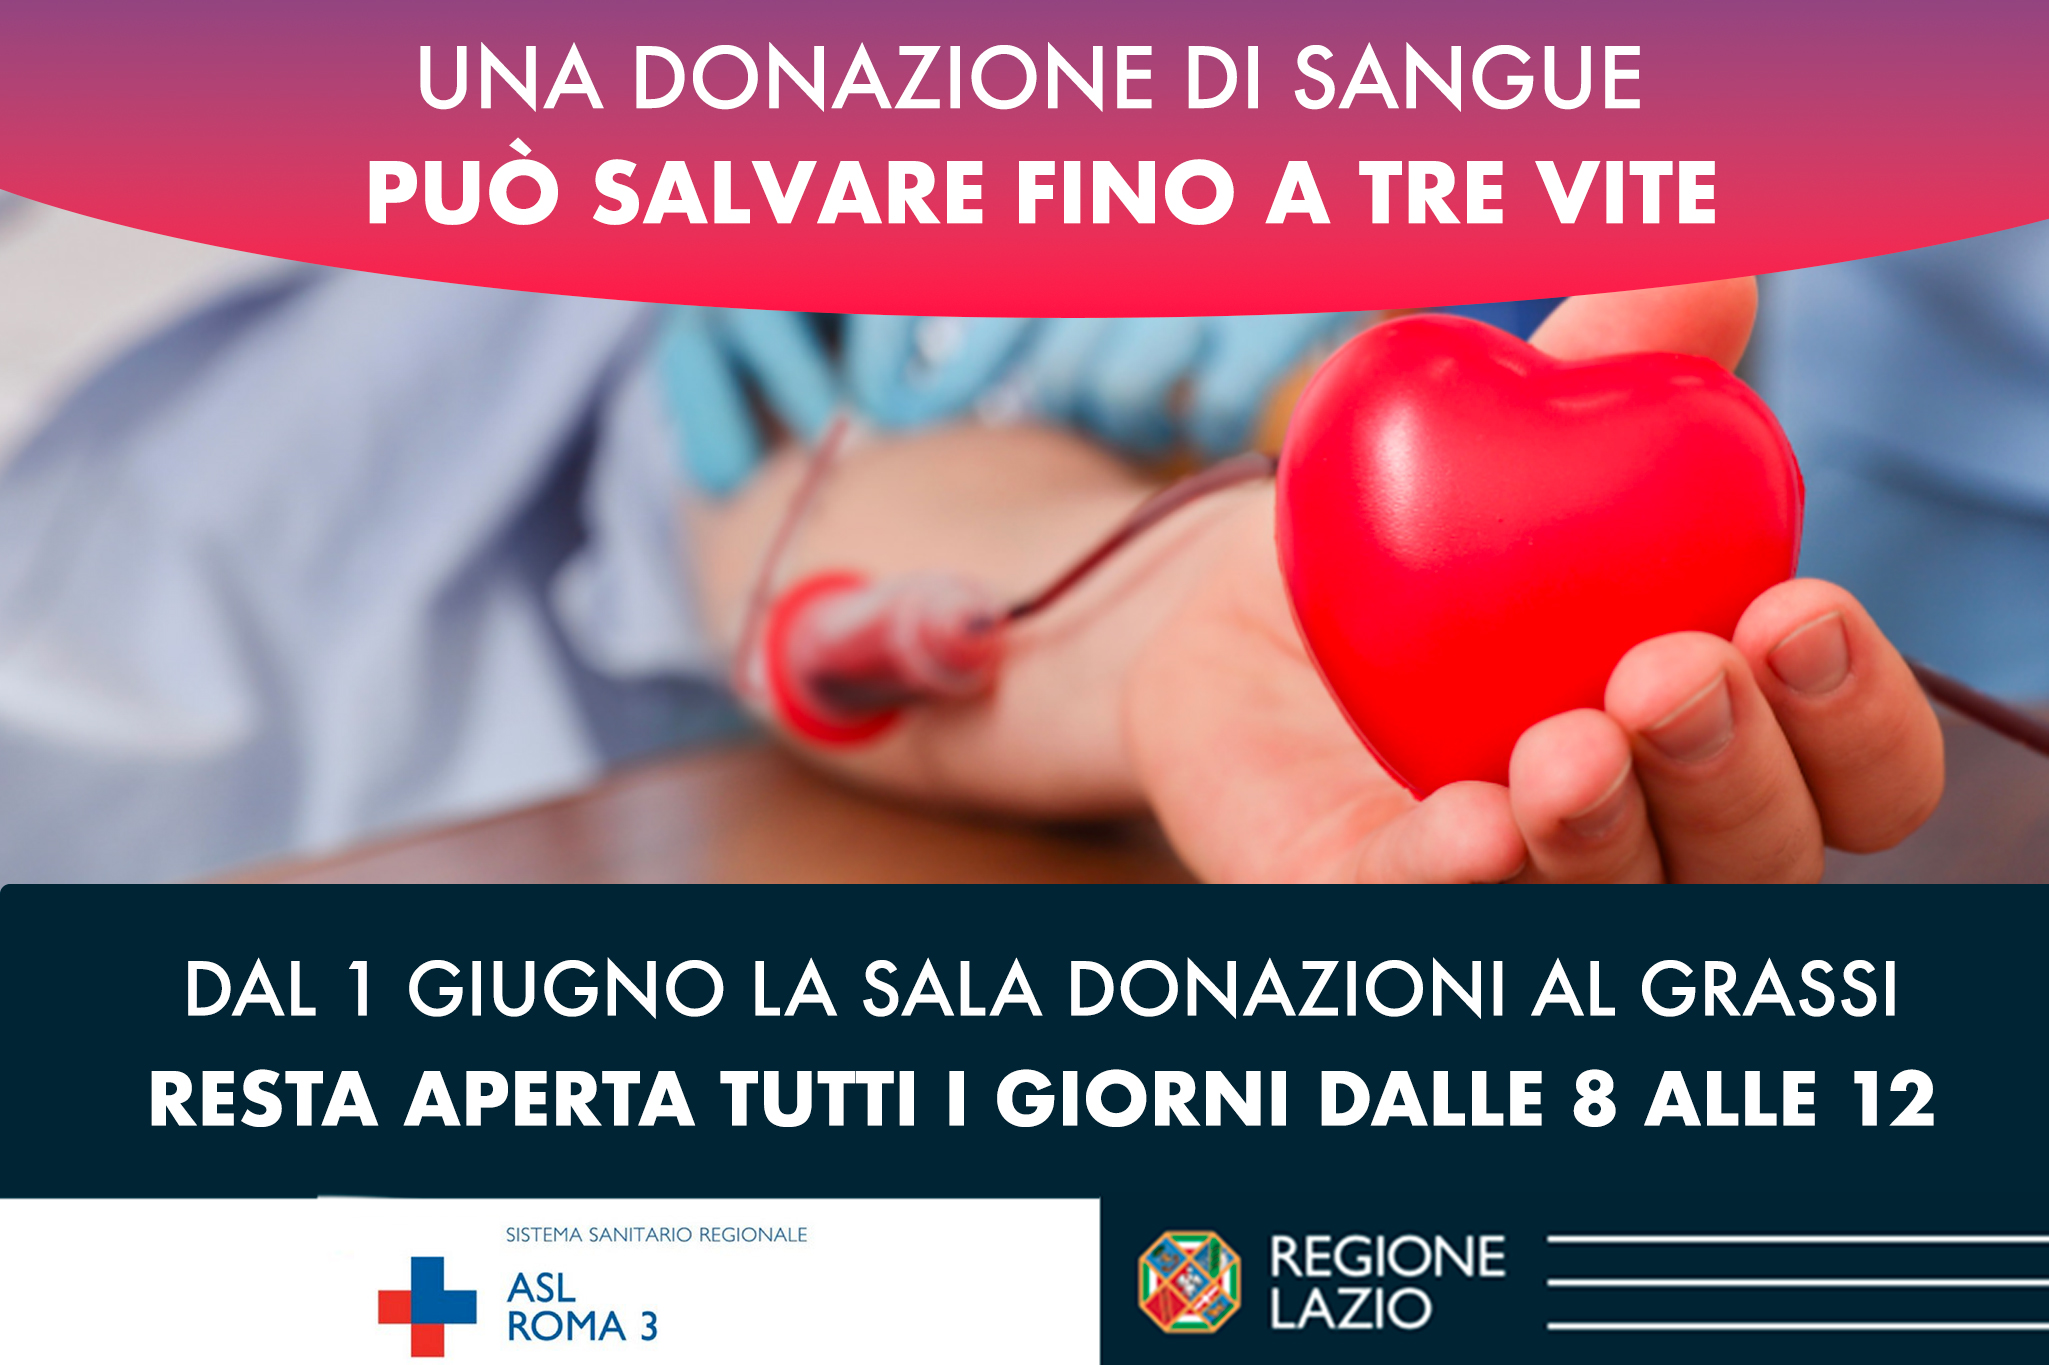 Dal 1 Giugno la Sala donazione sangue al Grassi aperta dalle 8 alle 12 tutti i giorni